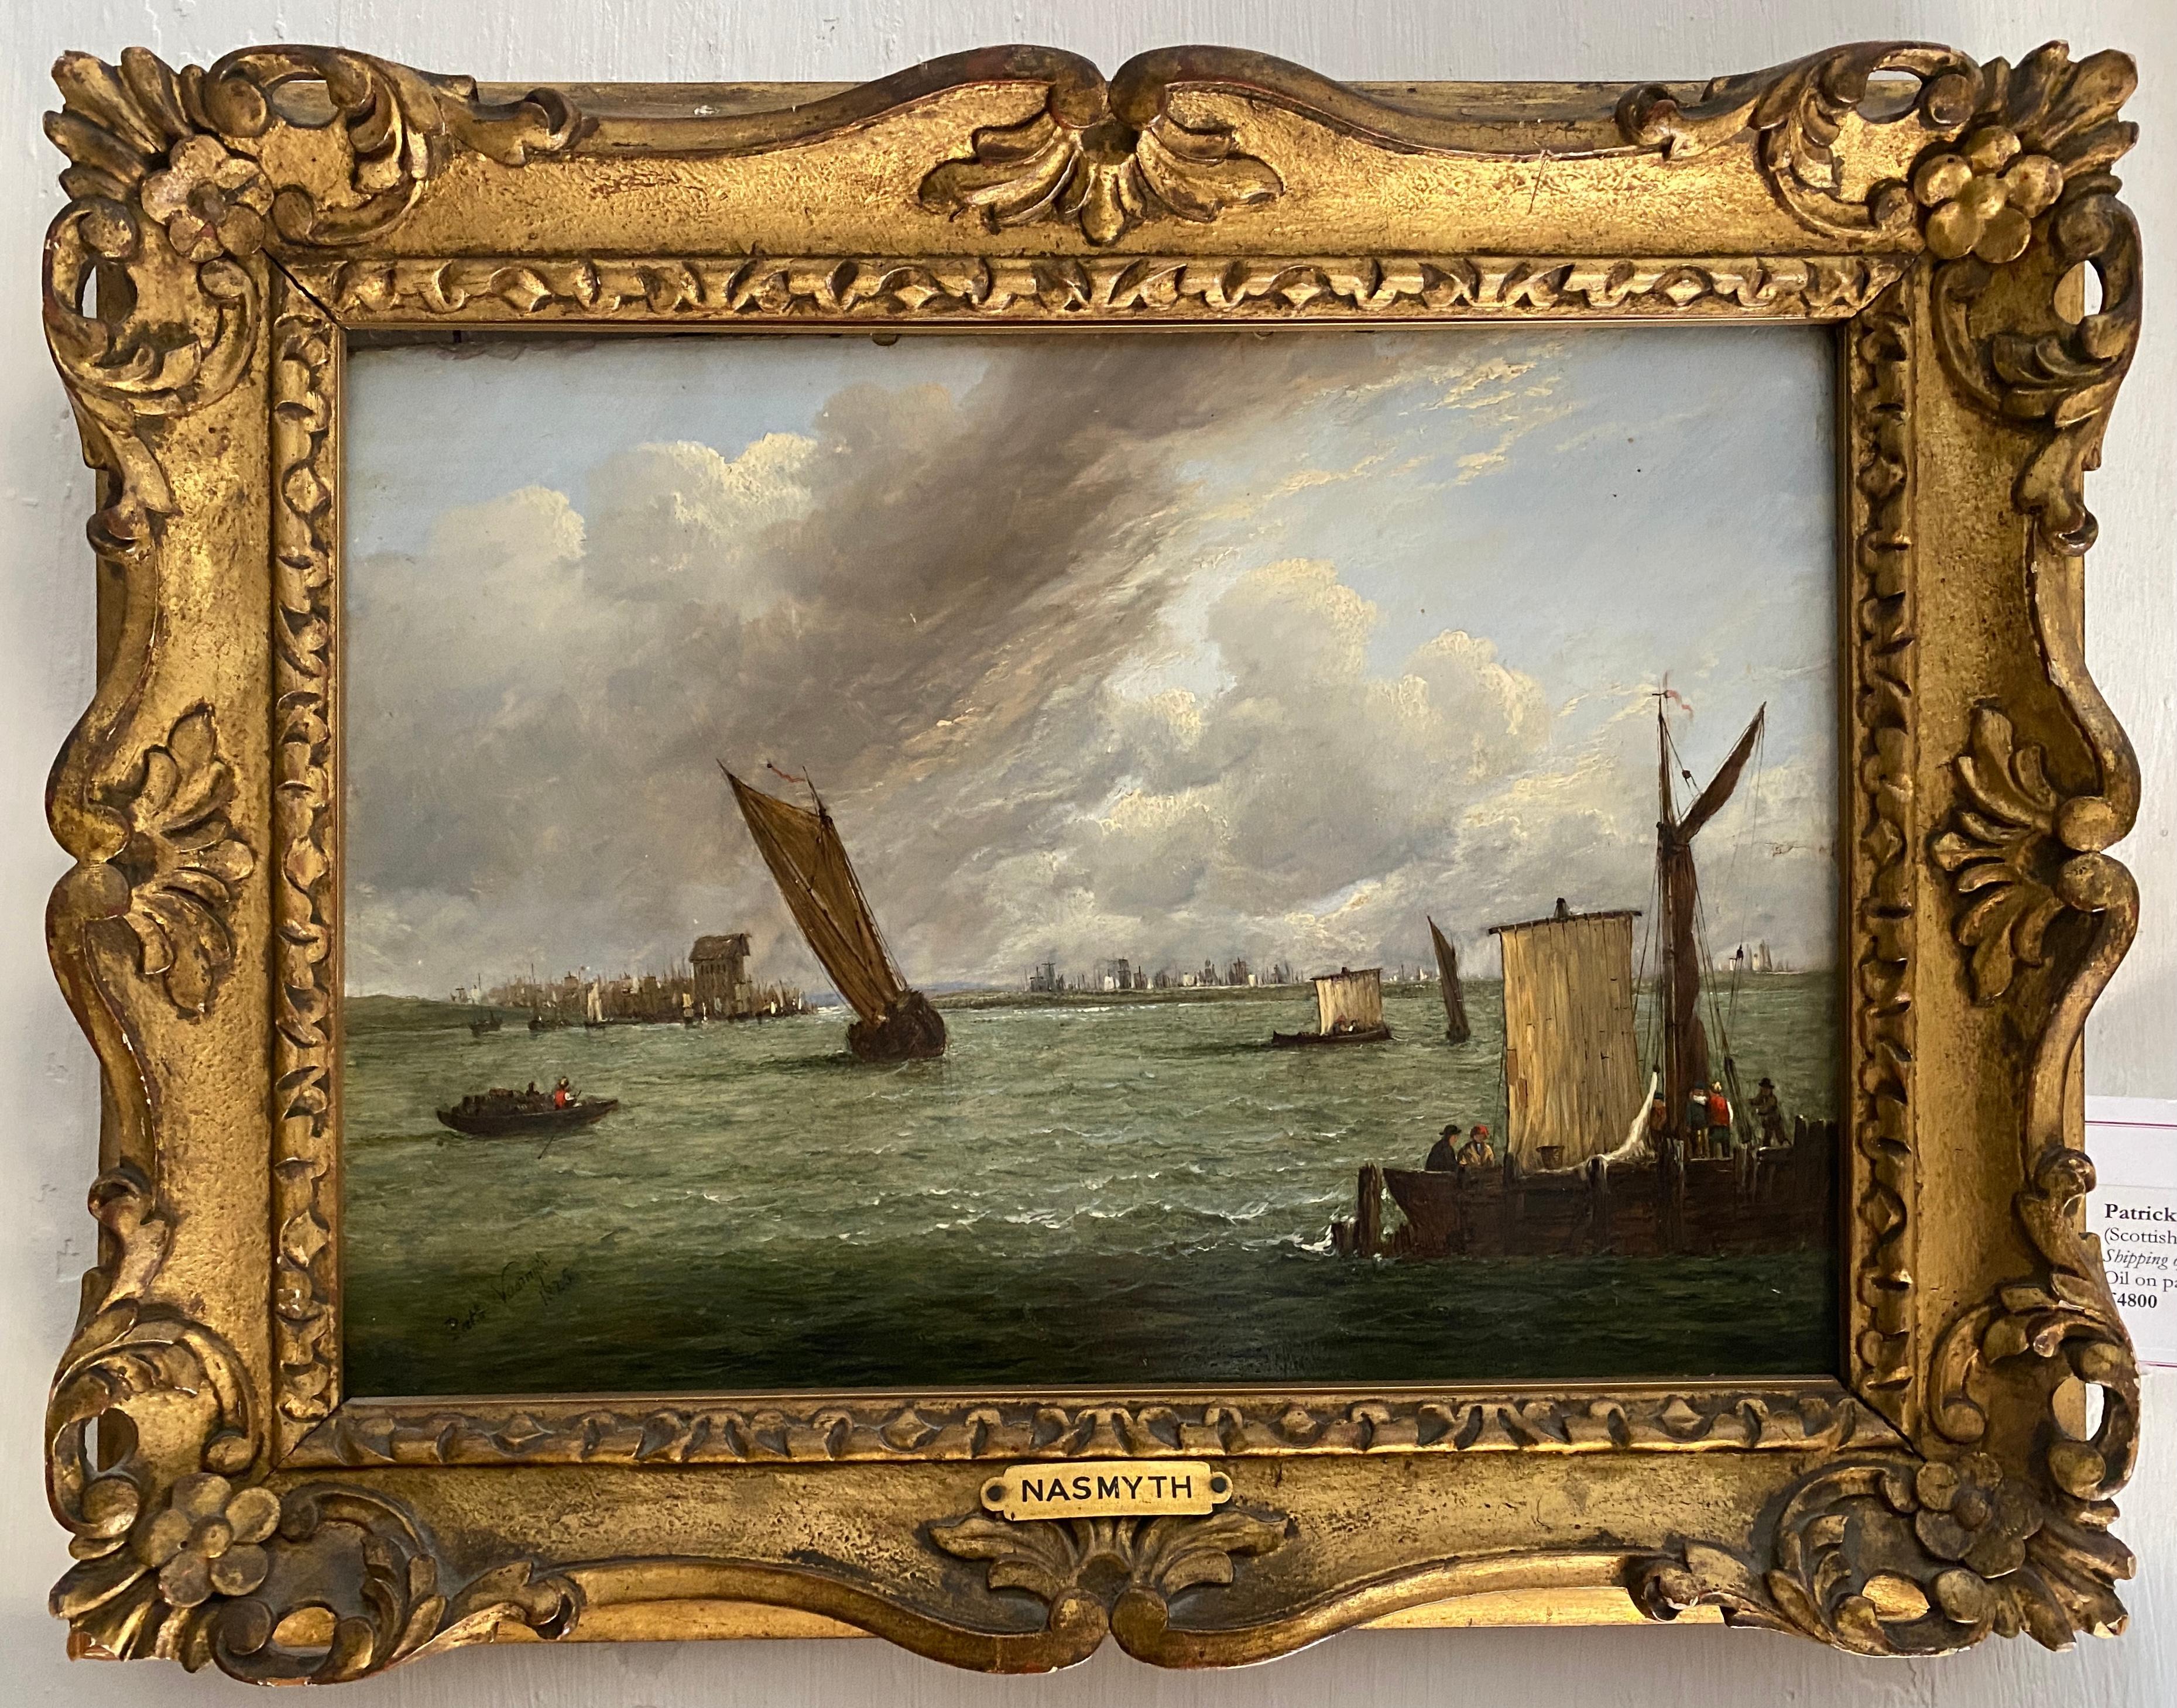 Schifffahrt vor der Küste von Patrick Nasmyth. Signiert und datiert 1825, ein sehr gutes Stück in einem fantastischen Rahmen.